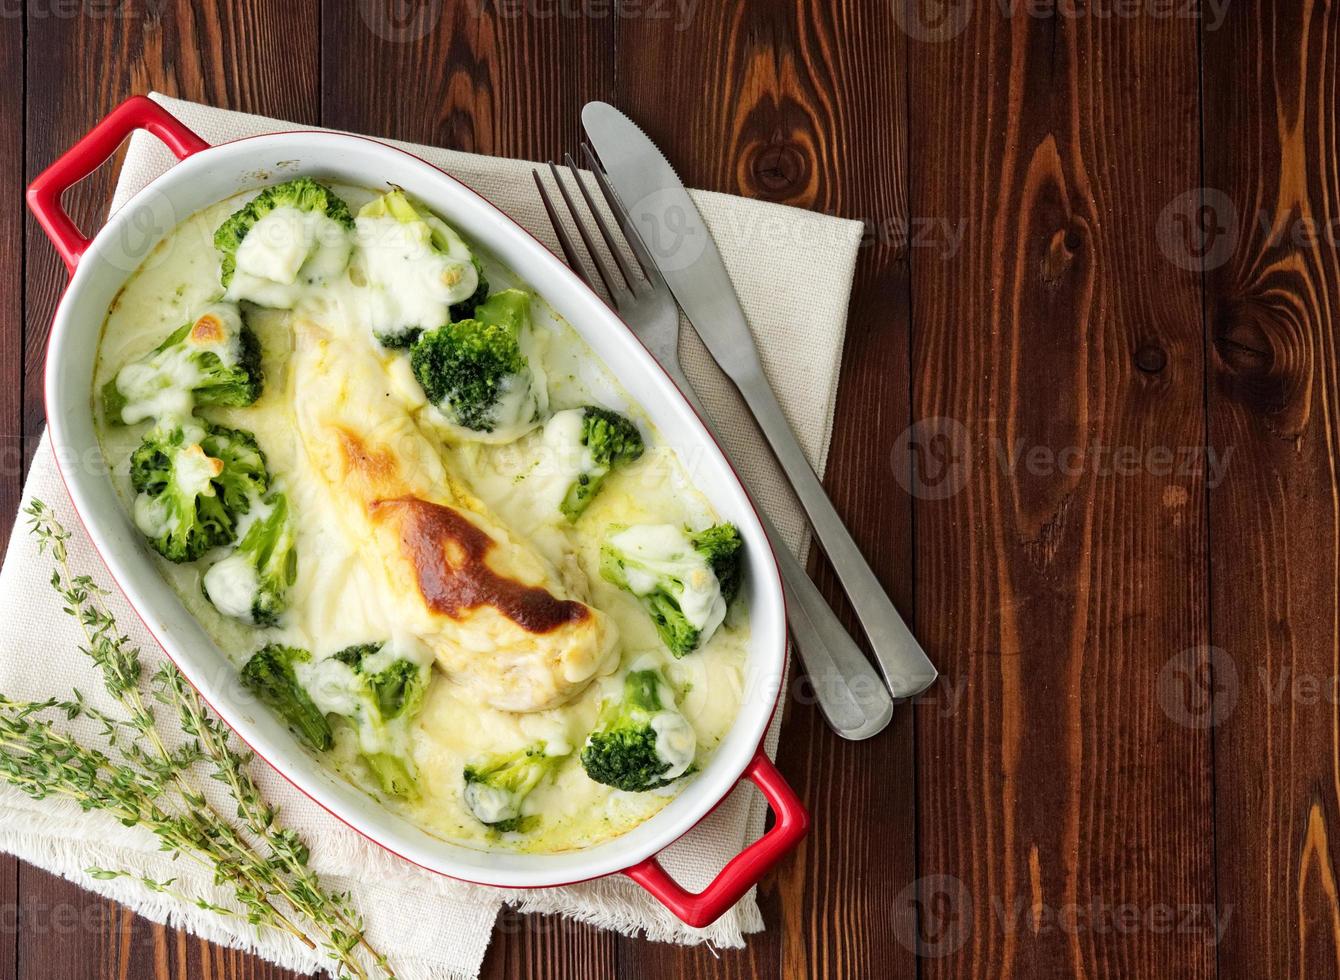 filé de frango assado com brócolis em molho bechamel na mesa de madeira. alimentação saudável, alimentação limpa foto